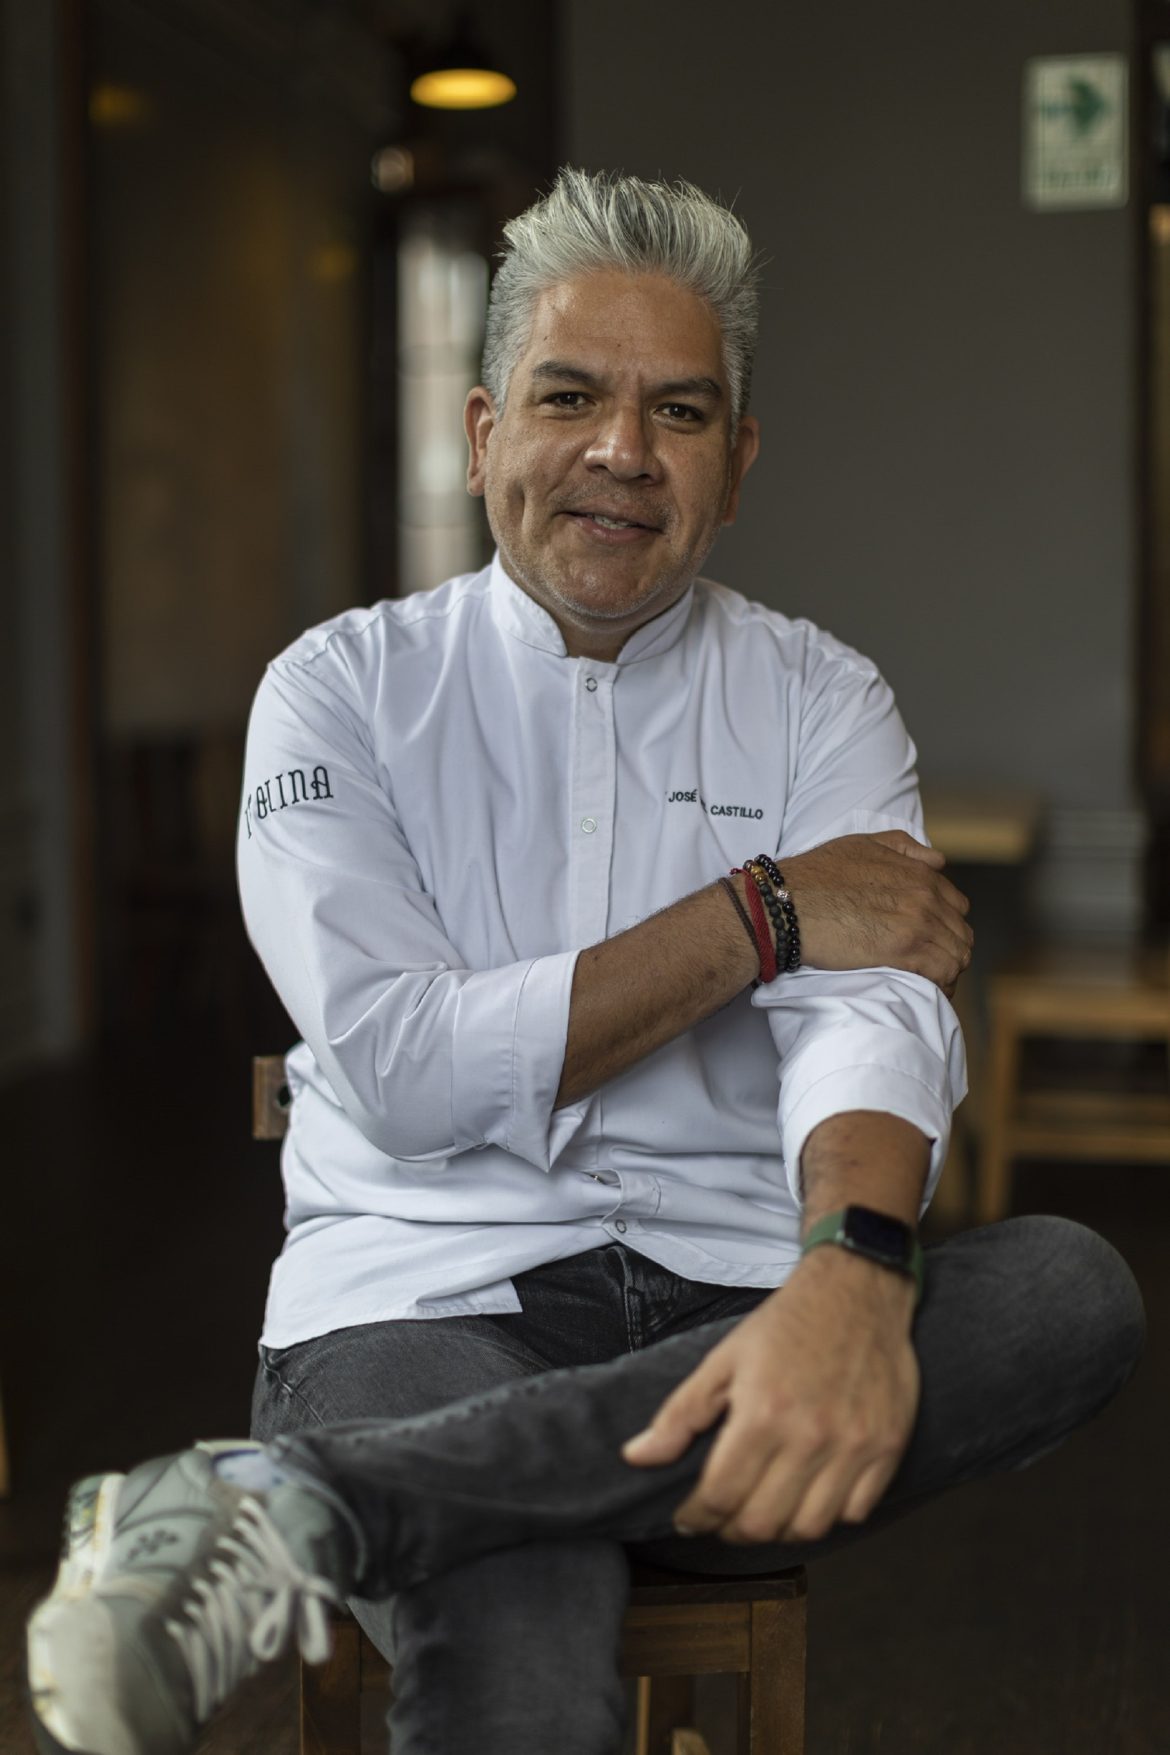 Chef Jose Castillo